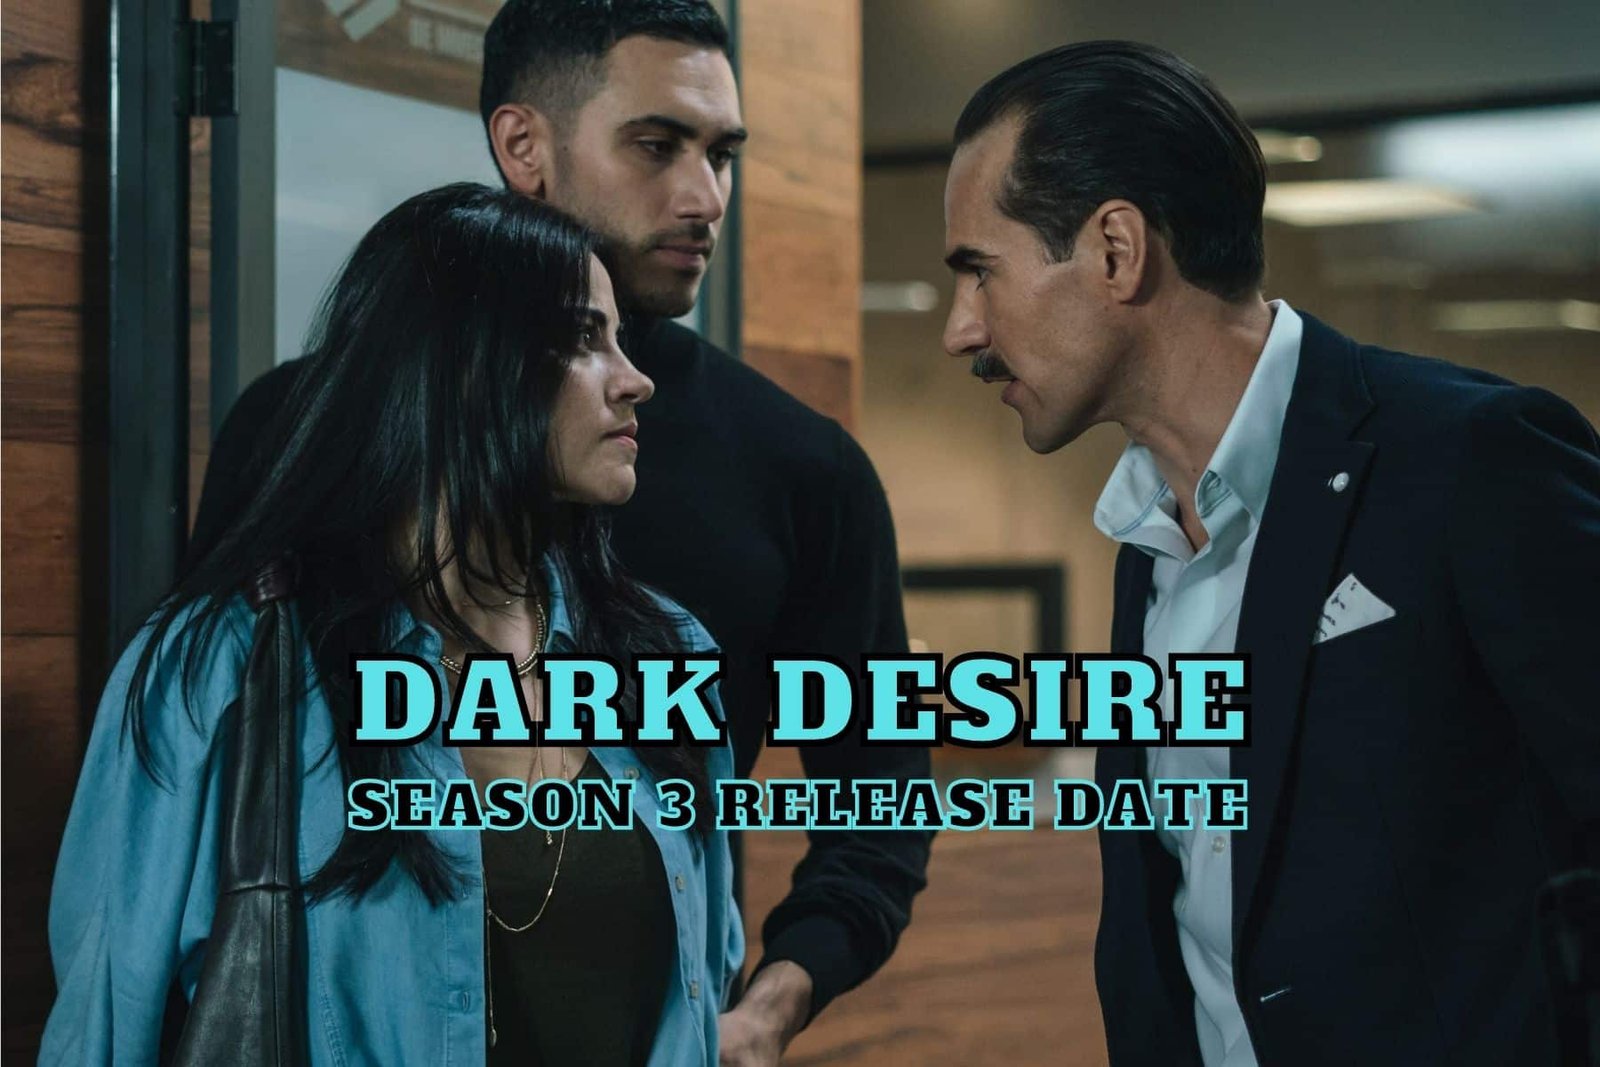 Dark Desire Season 3 Release Date, Trailer - Is it Canceled?